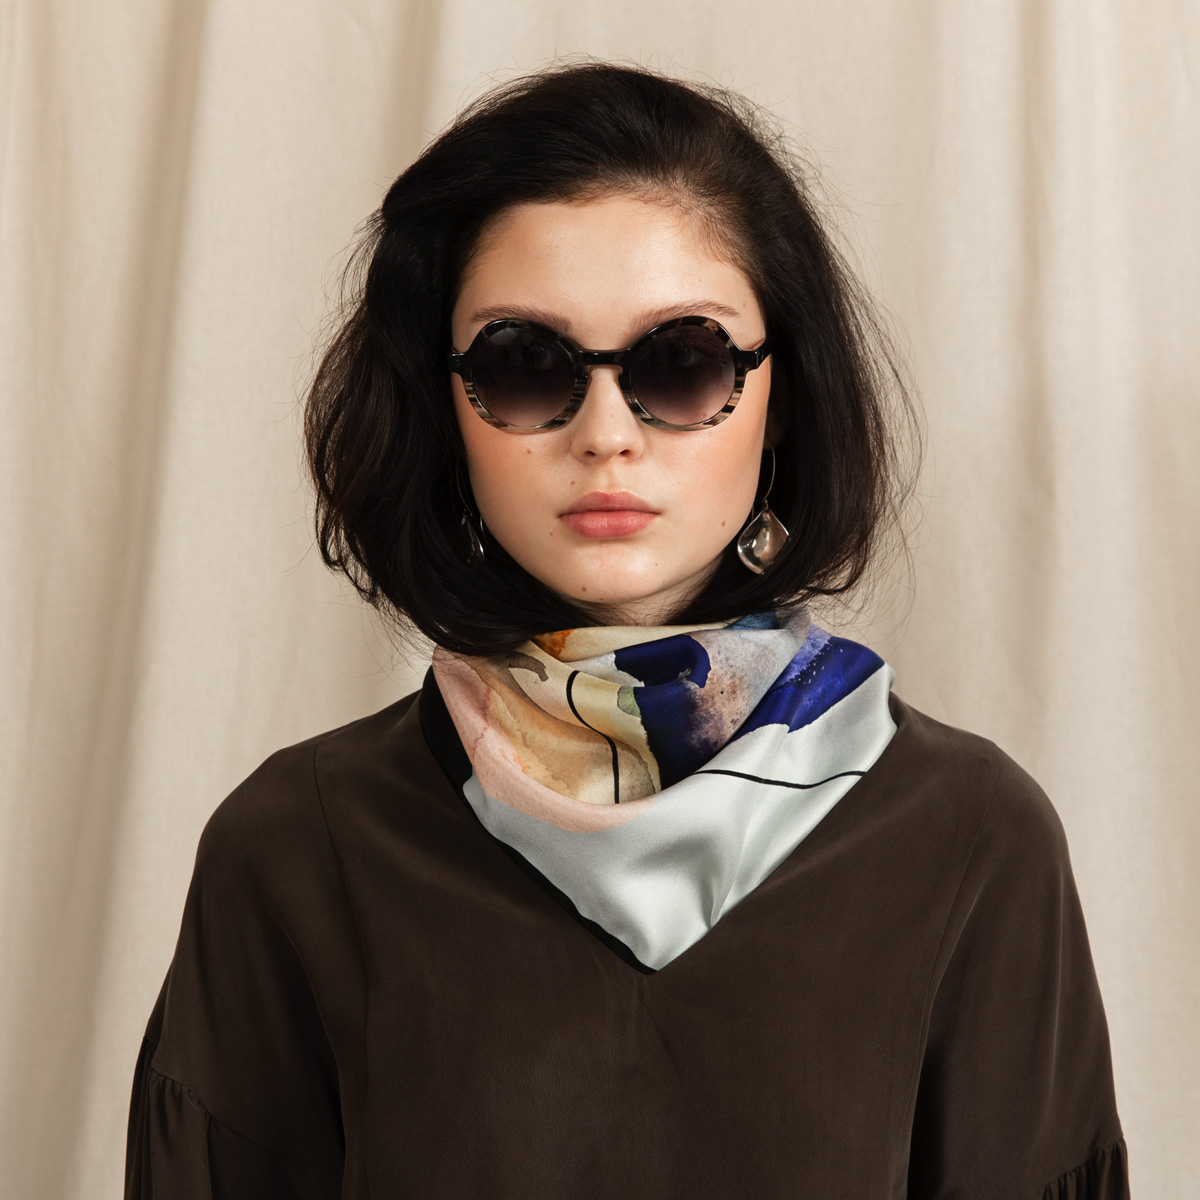 22 Fashion- Twill and scarf design ideas